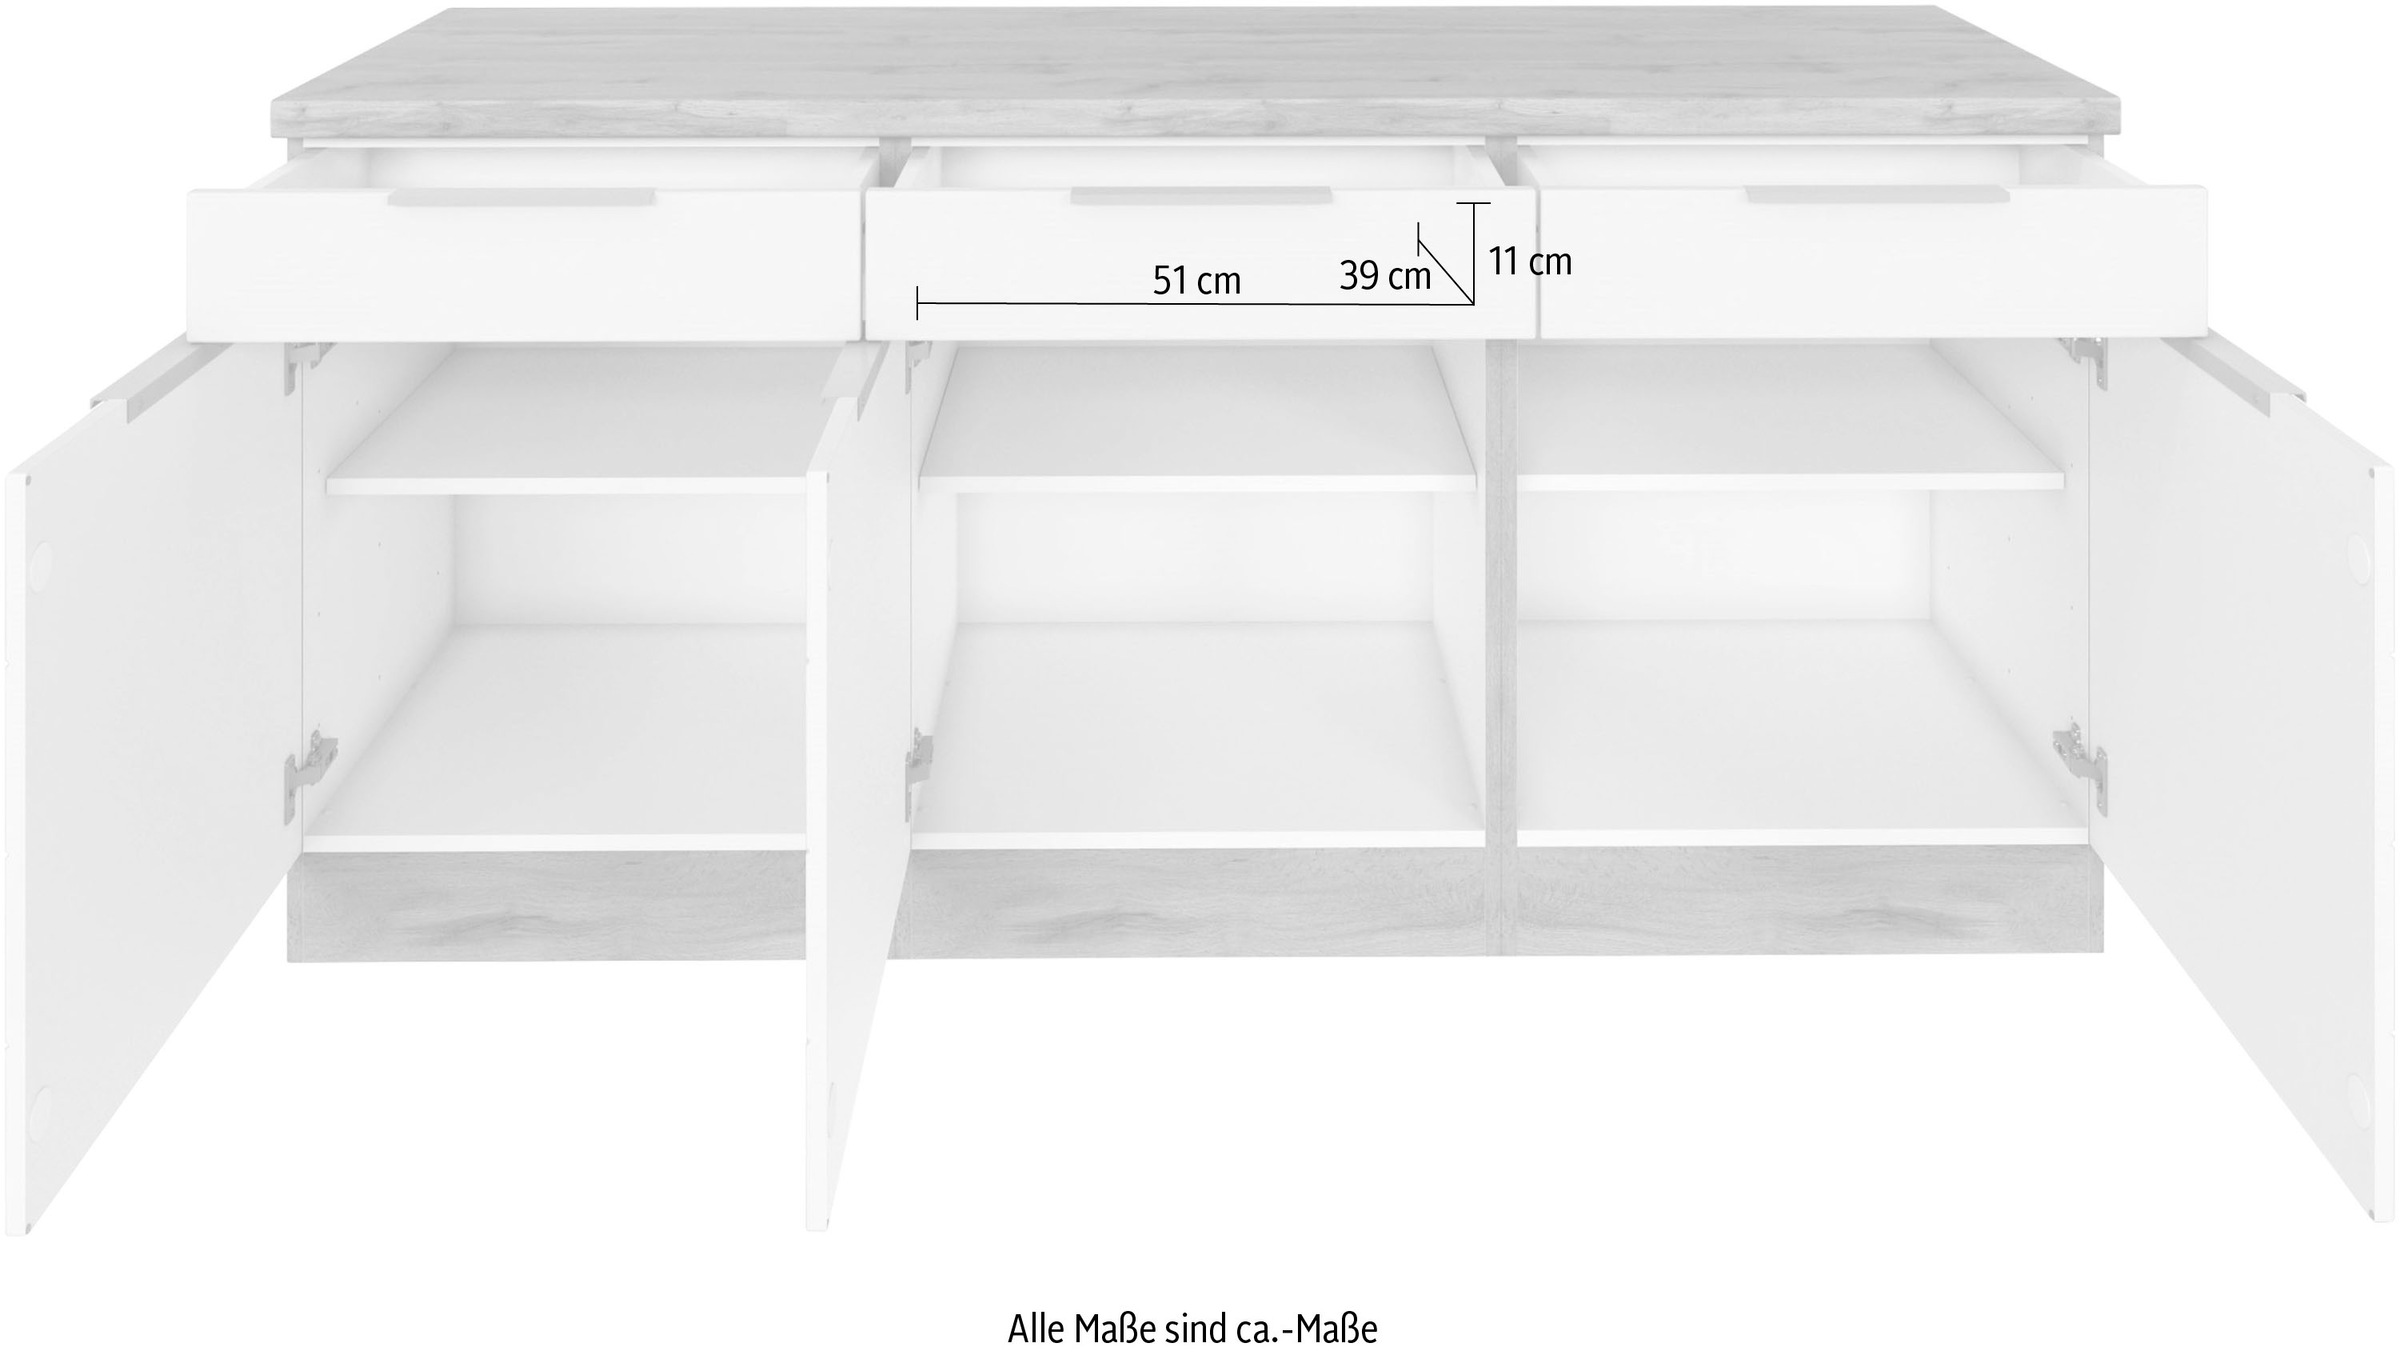 Kochstation Unterschrank »KS-Luhe«, 180 cm breit, für viel Stauraum, MDF-Fronten mit waagerechter Lisene